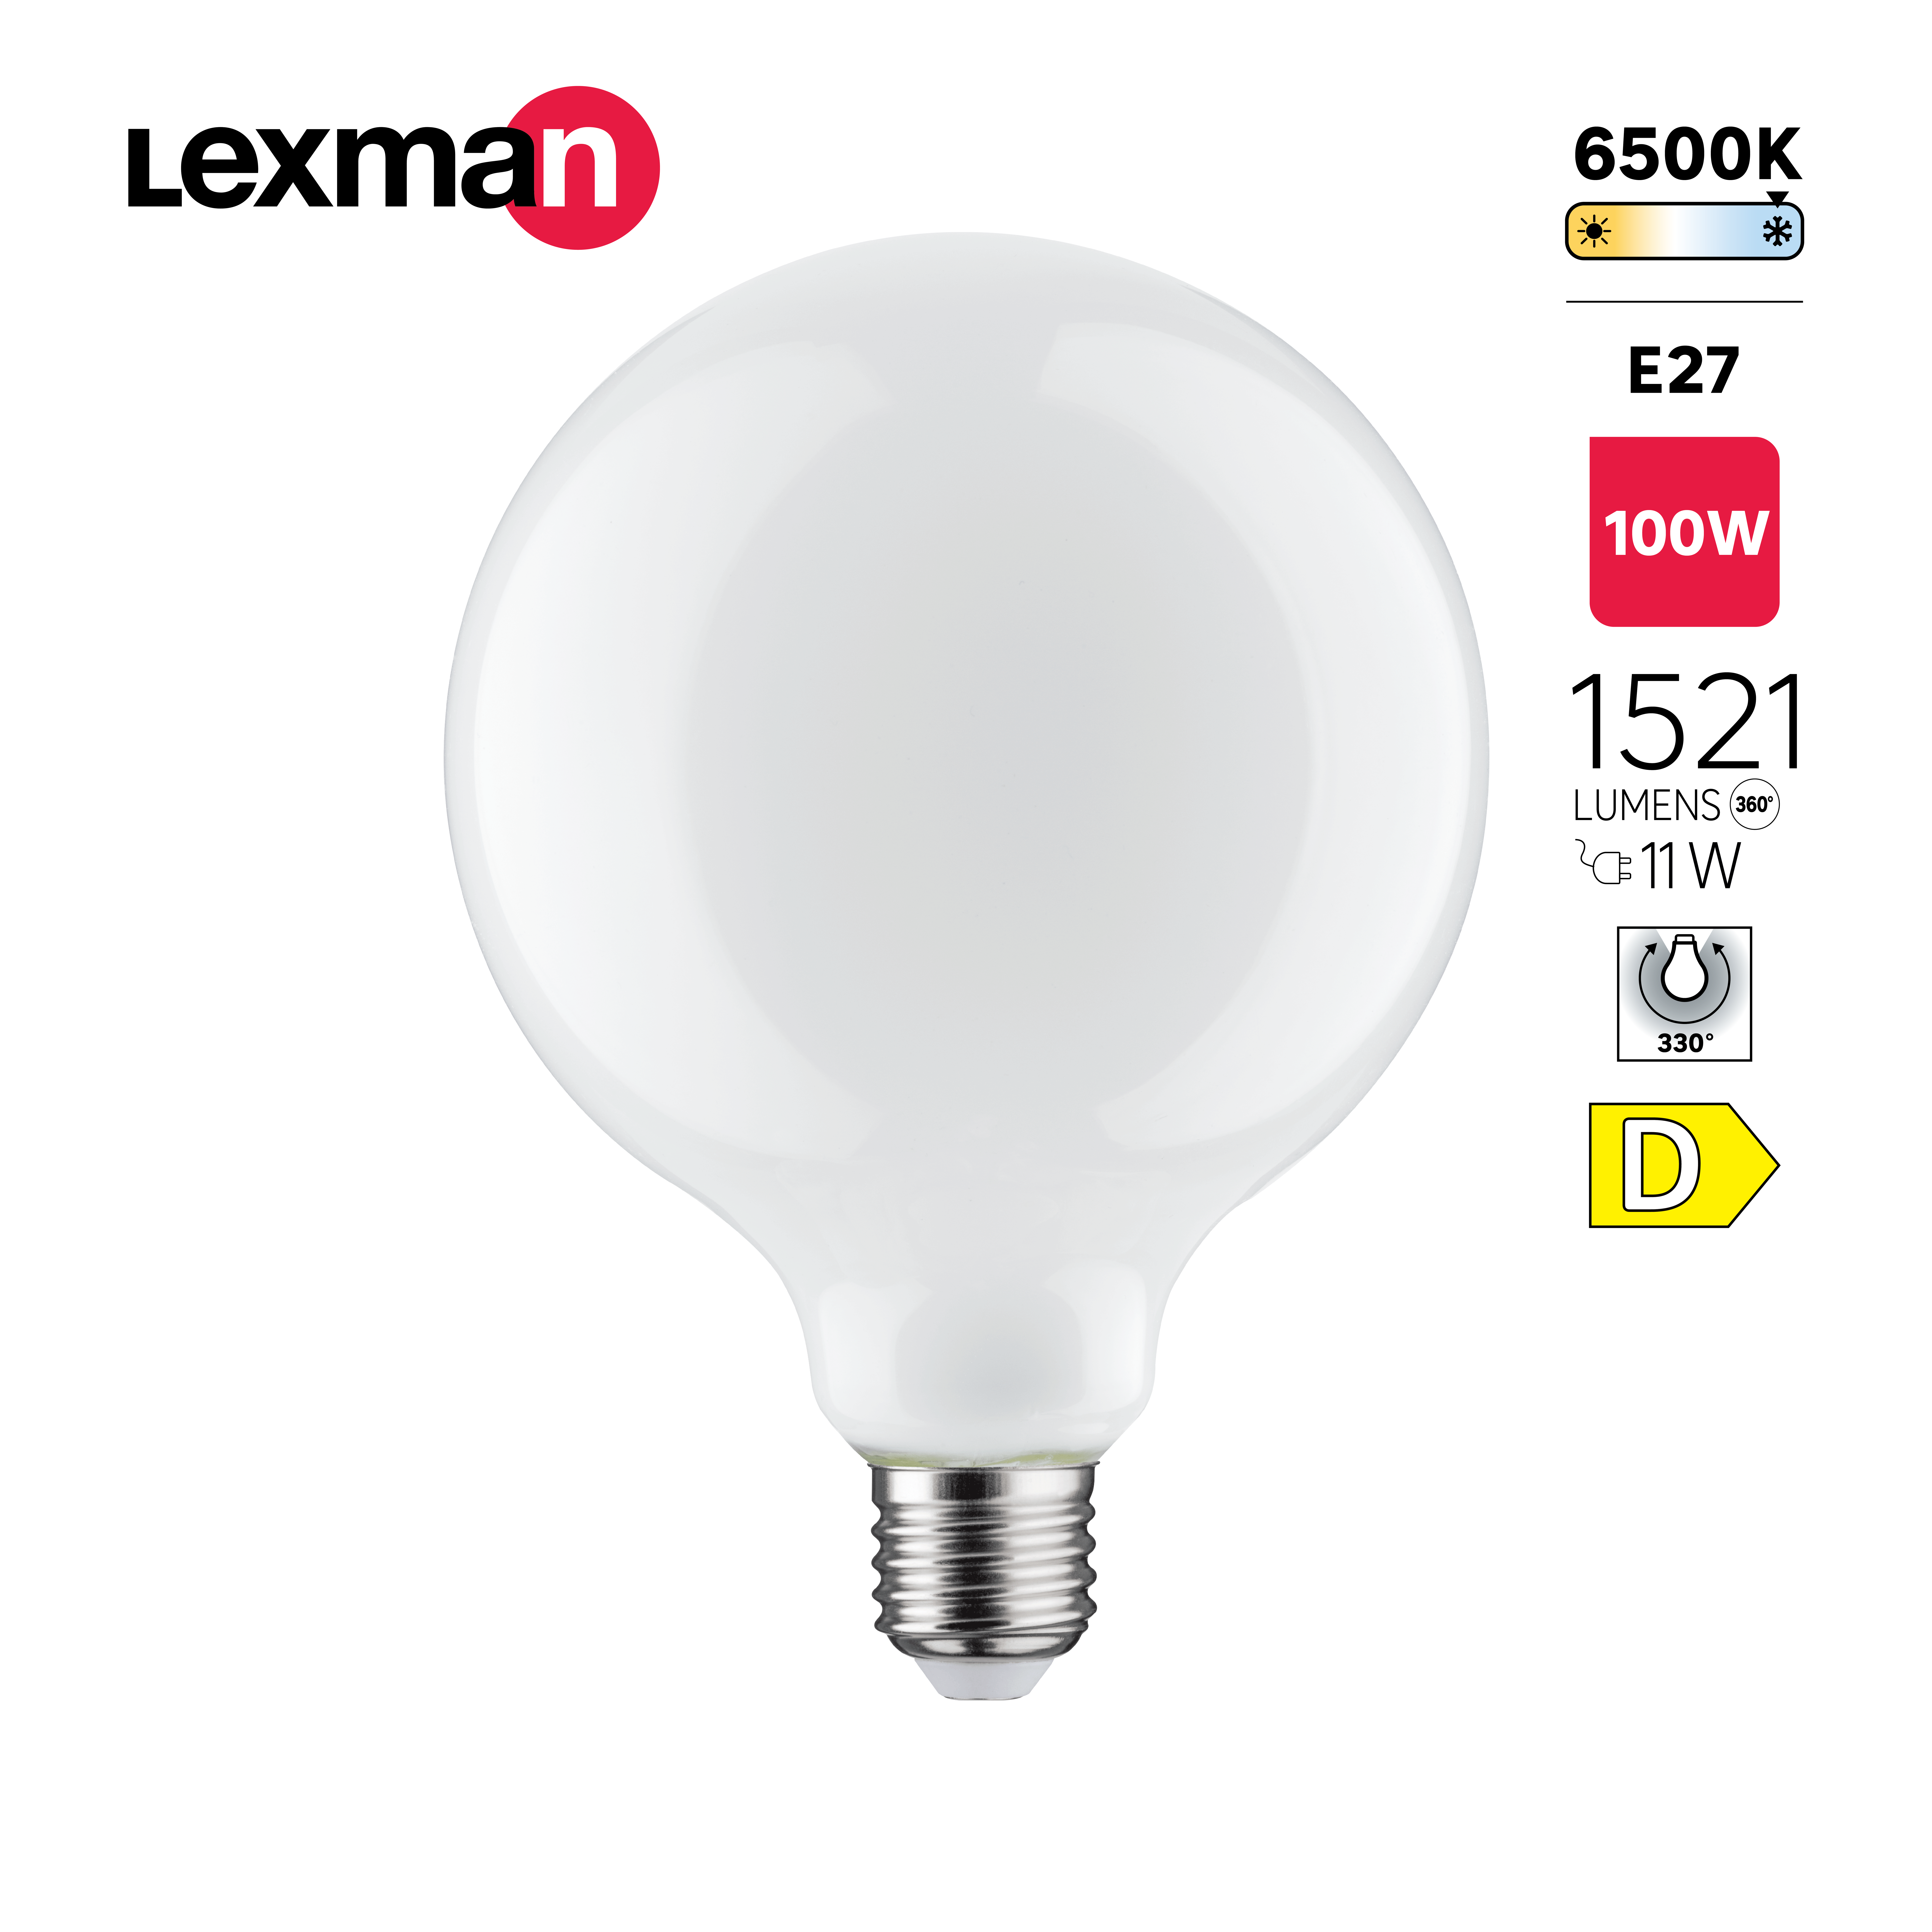 Bombilla LED filamento E27 1055 lm blanco frío Lexman